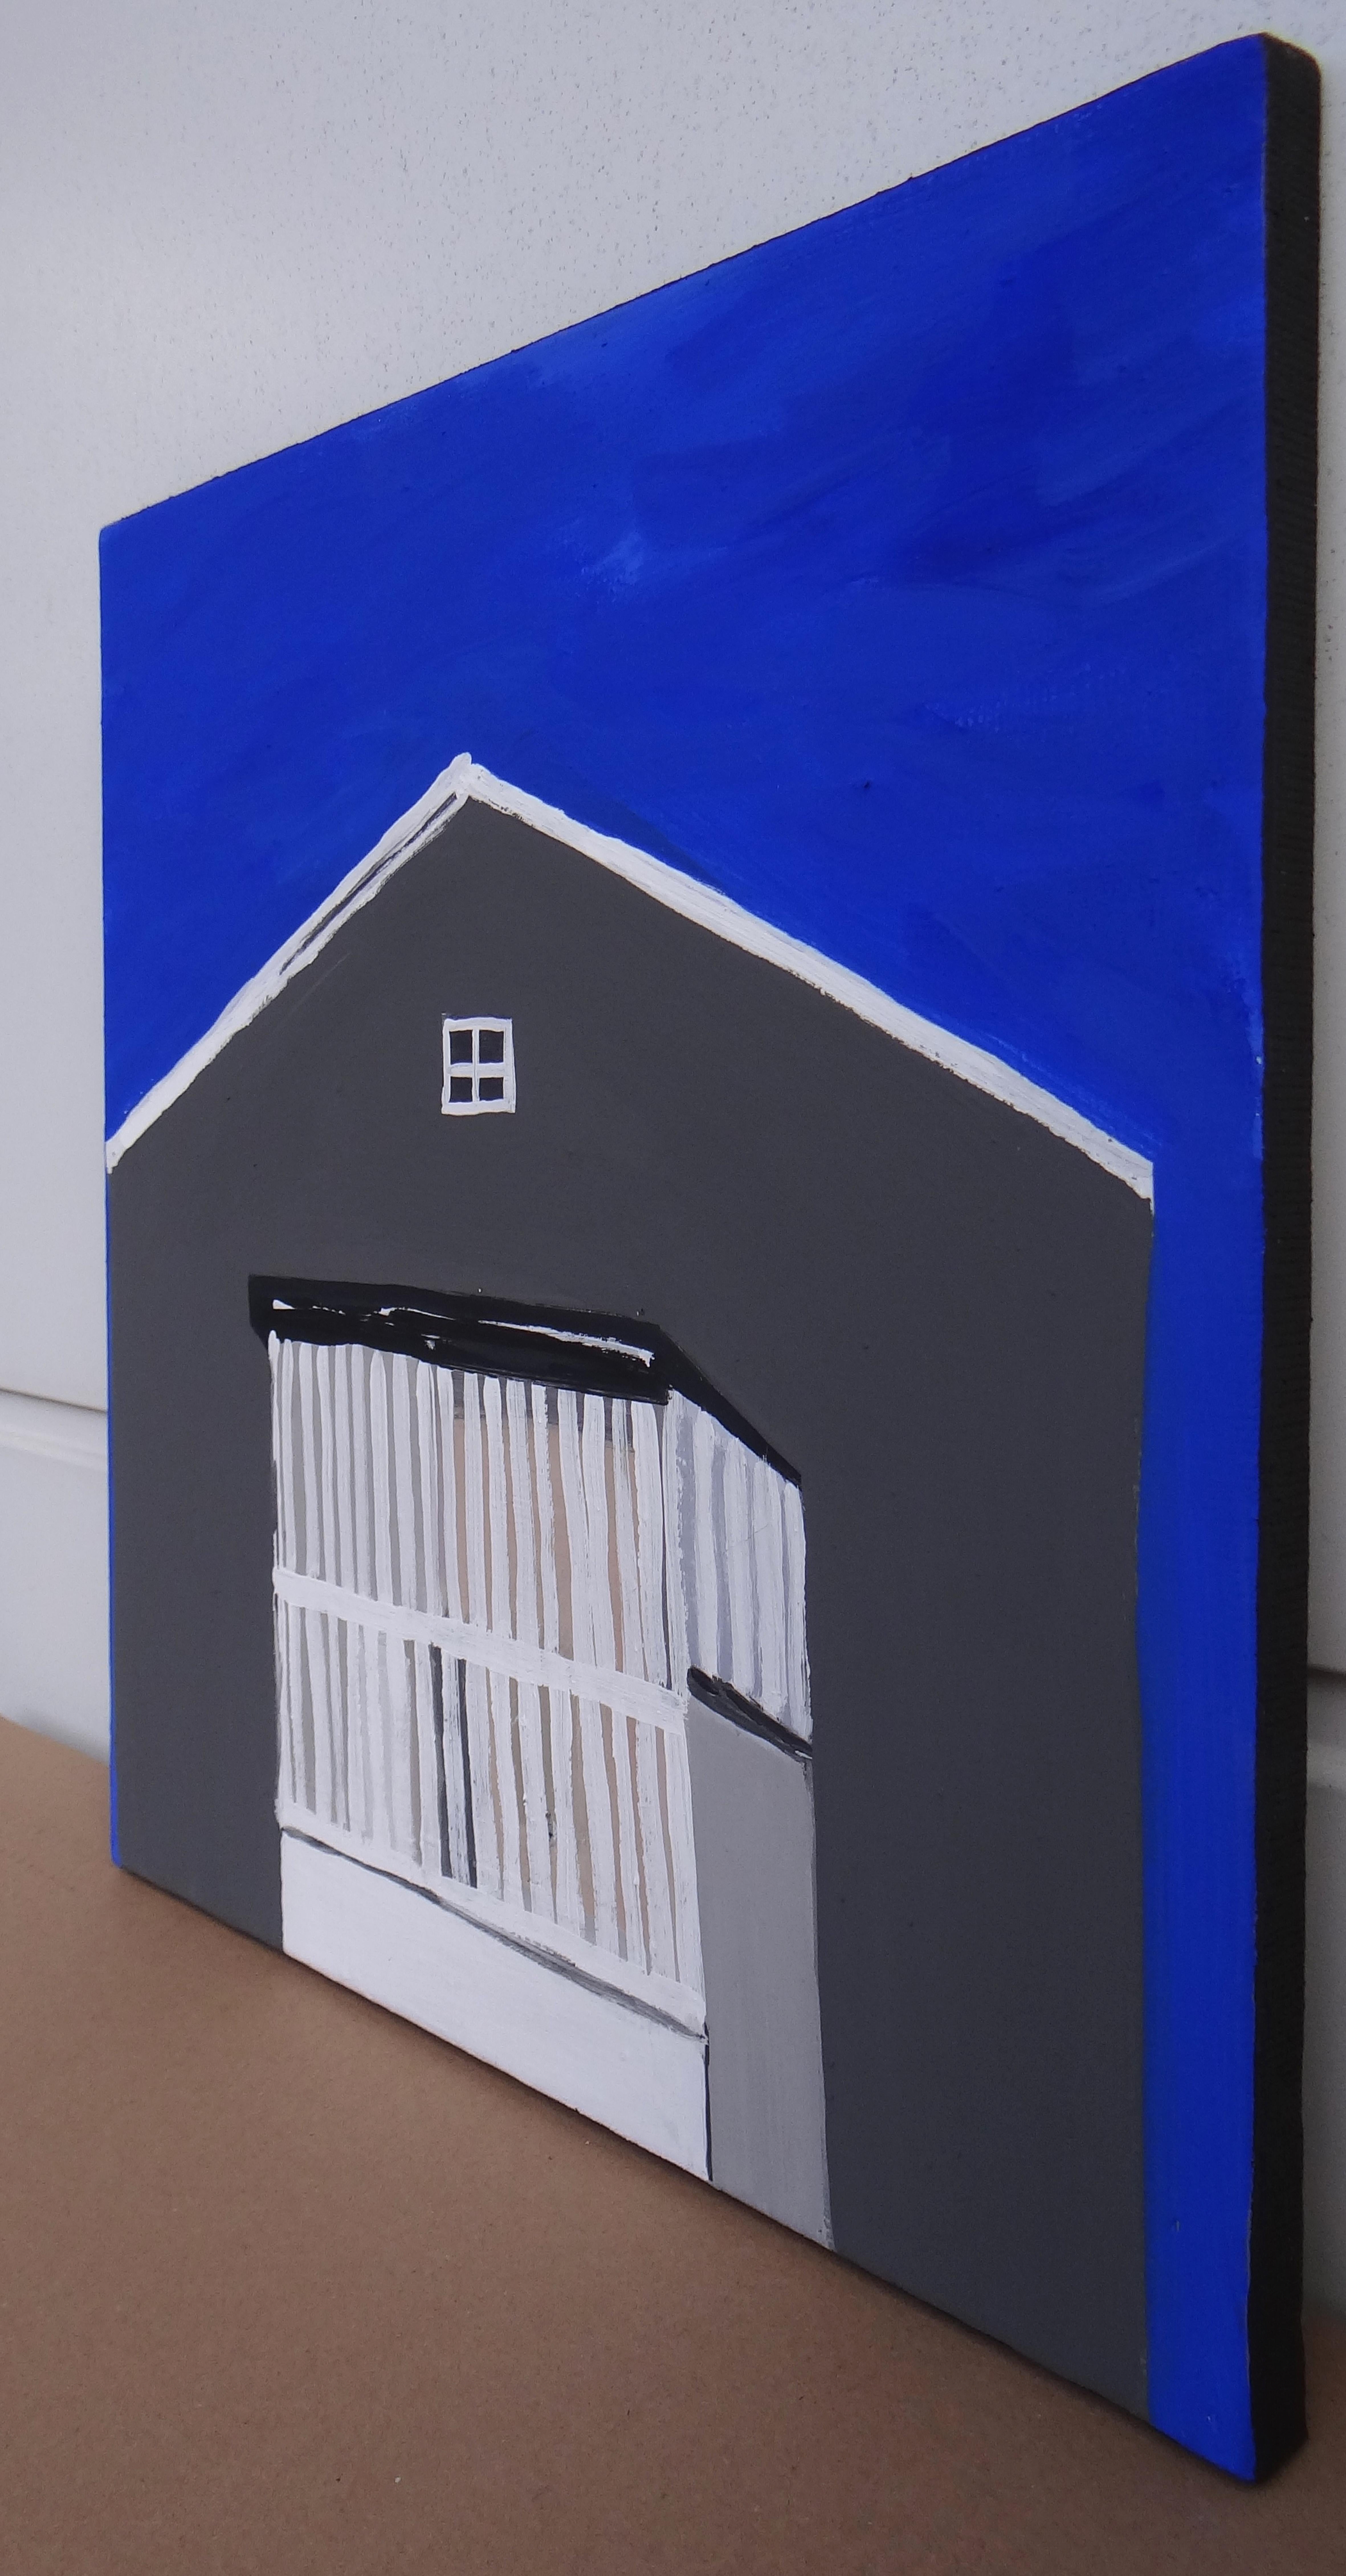 Maison avec veranda  - Expressif, symbolique et moderne  Peinture minimaliste - Contemporain Painting par Joanna Mrozowska